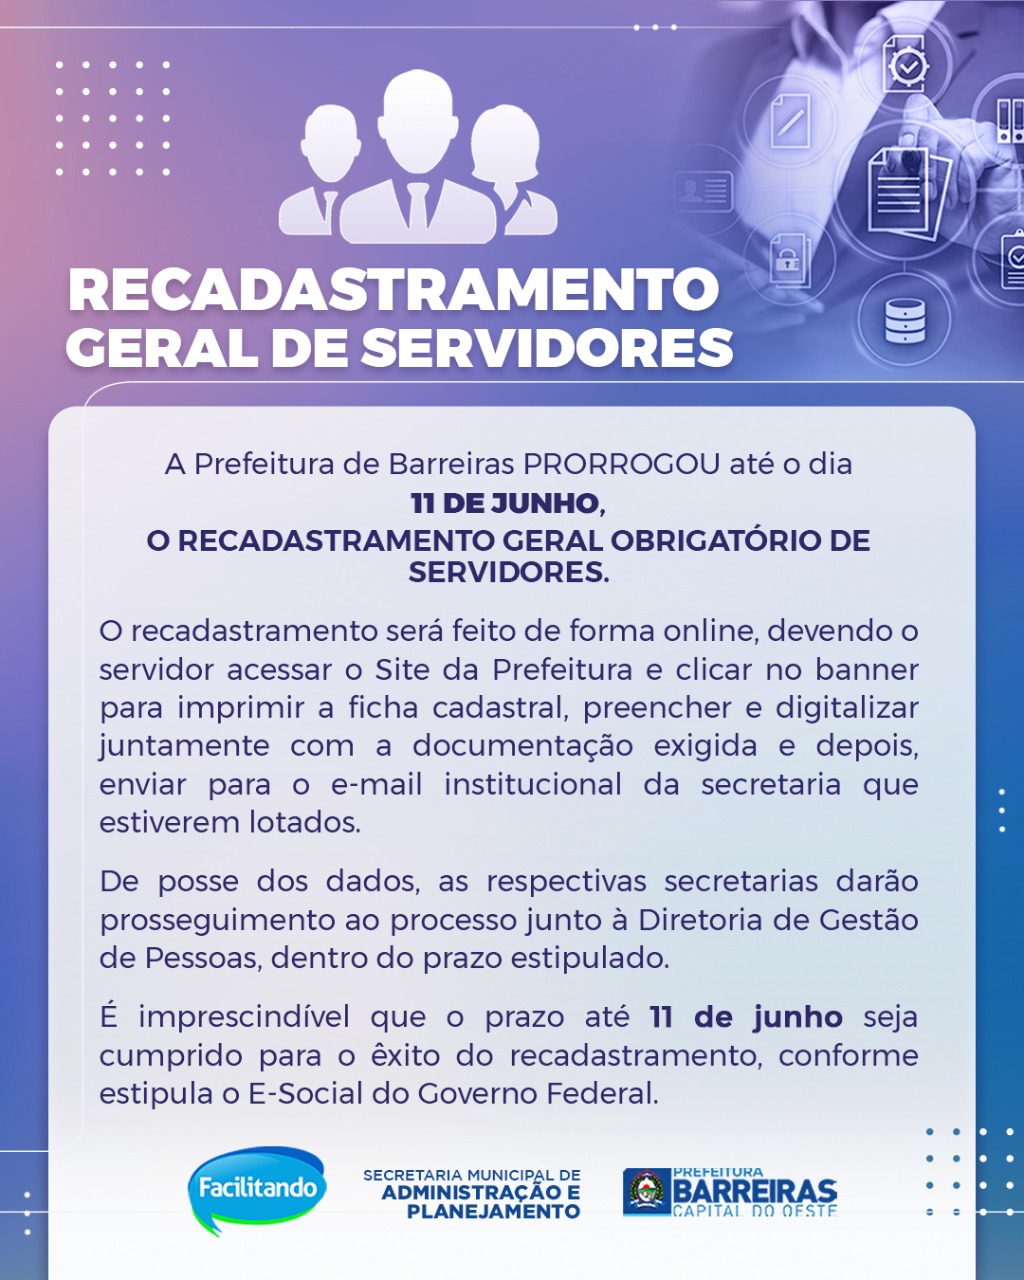 Prefeitura de Barreiras prorroga até sexta-feira (11) o prazo para recadastramento dos servidores municipais